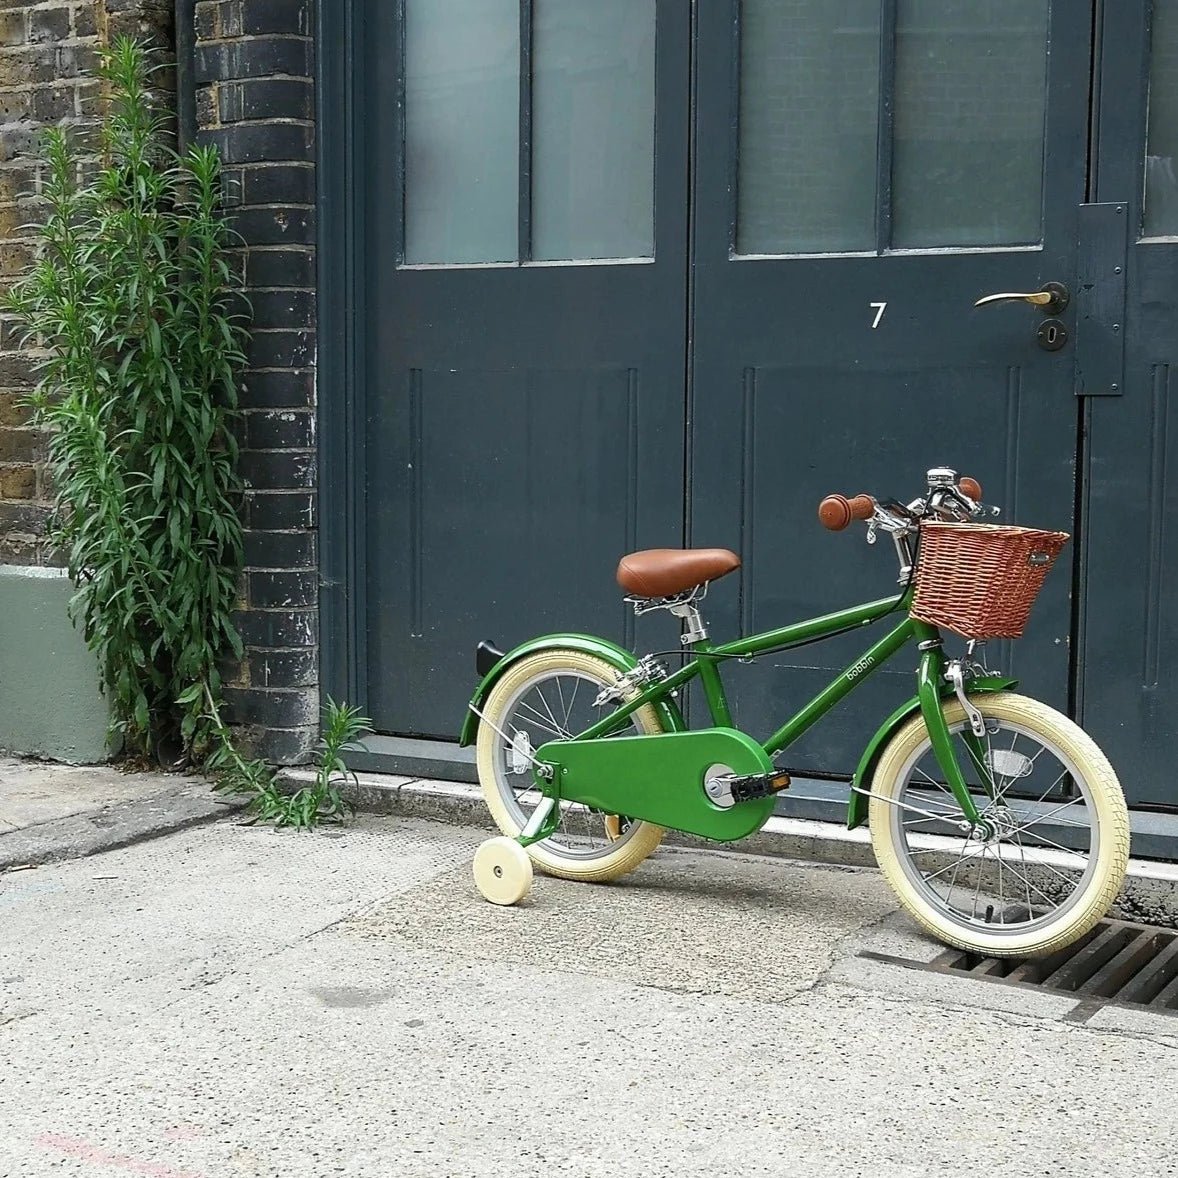 Nos 30 décorations de vélo créatives préférées - Bobbin Bikes